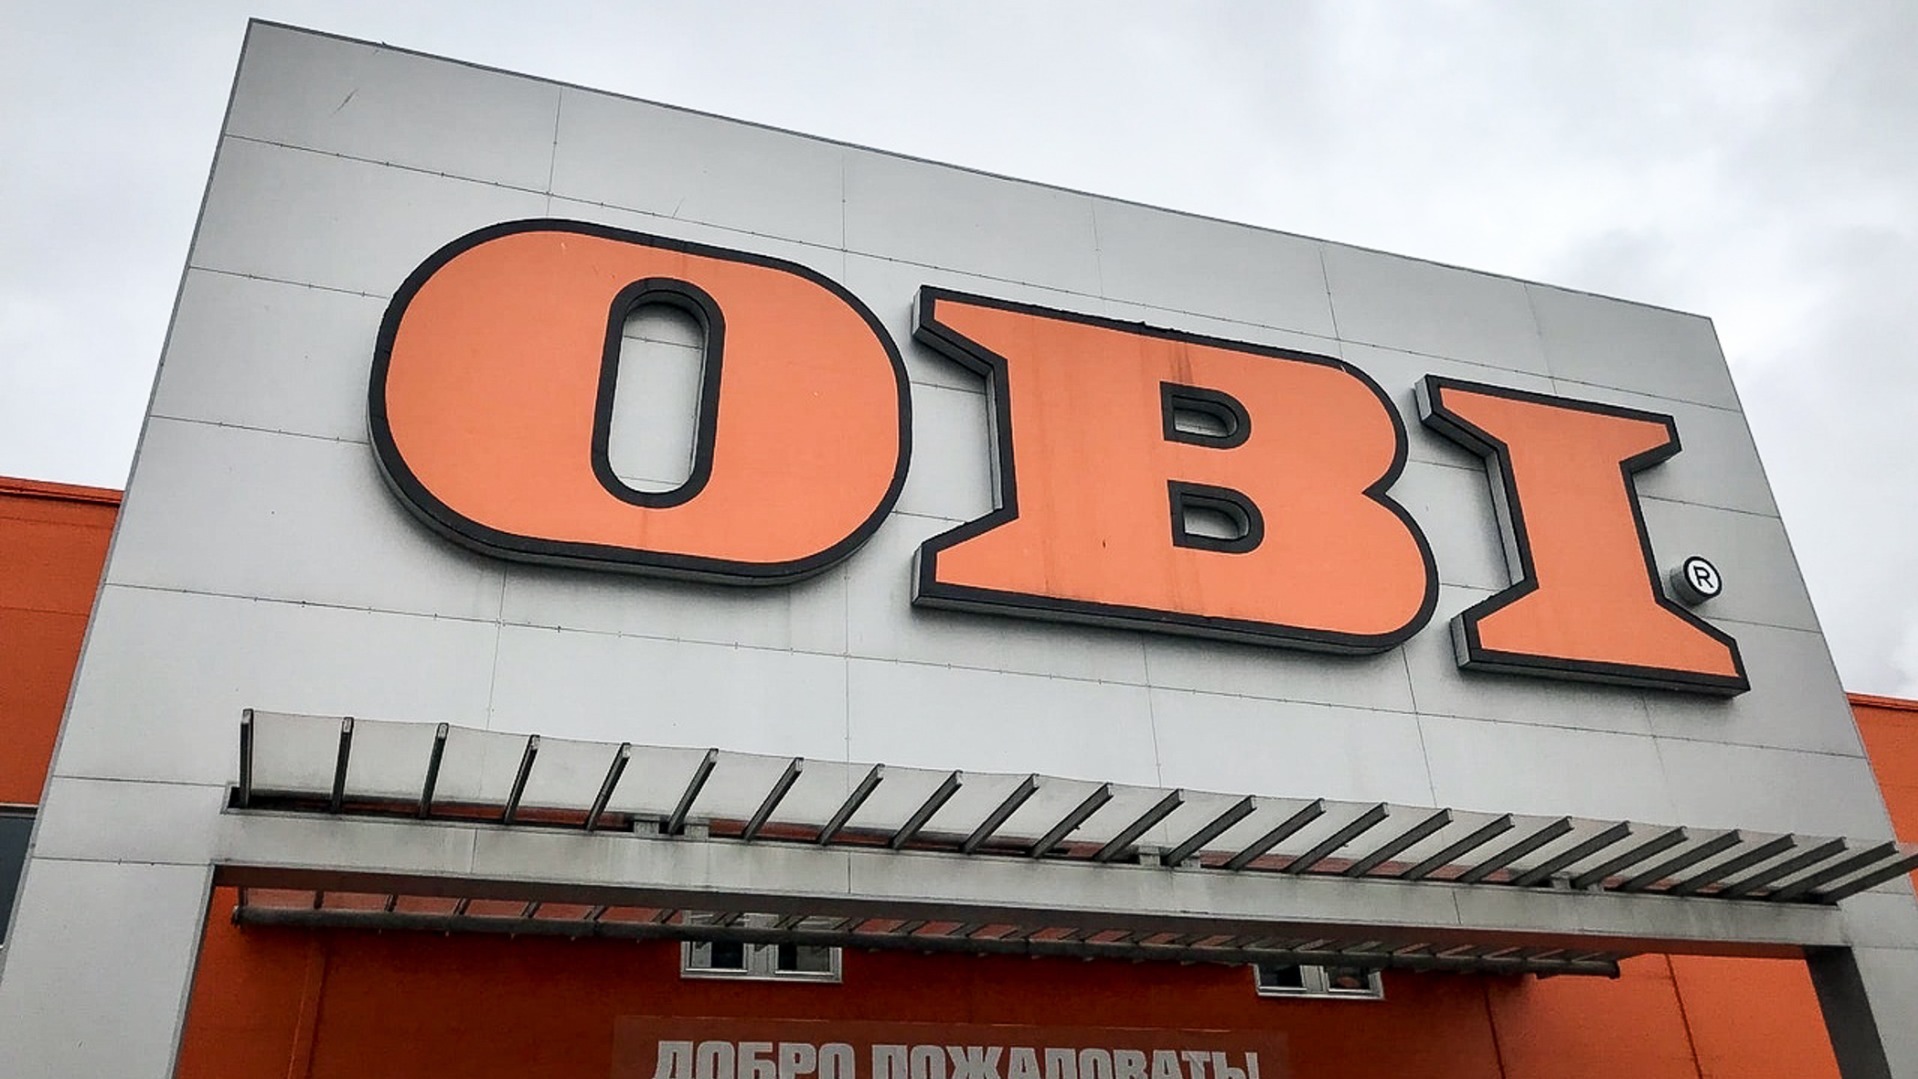 Российские магазины OBI собираются переименовать